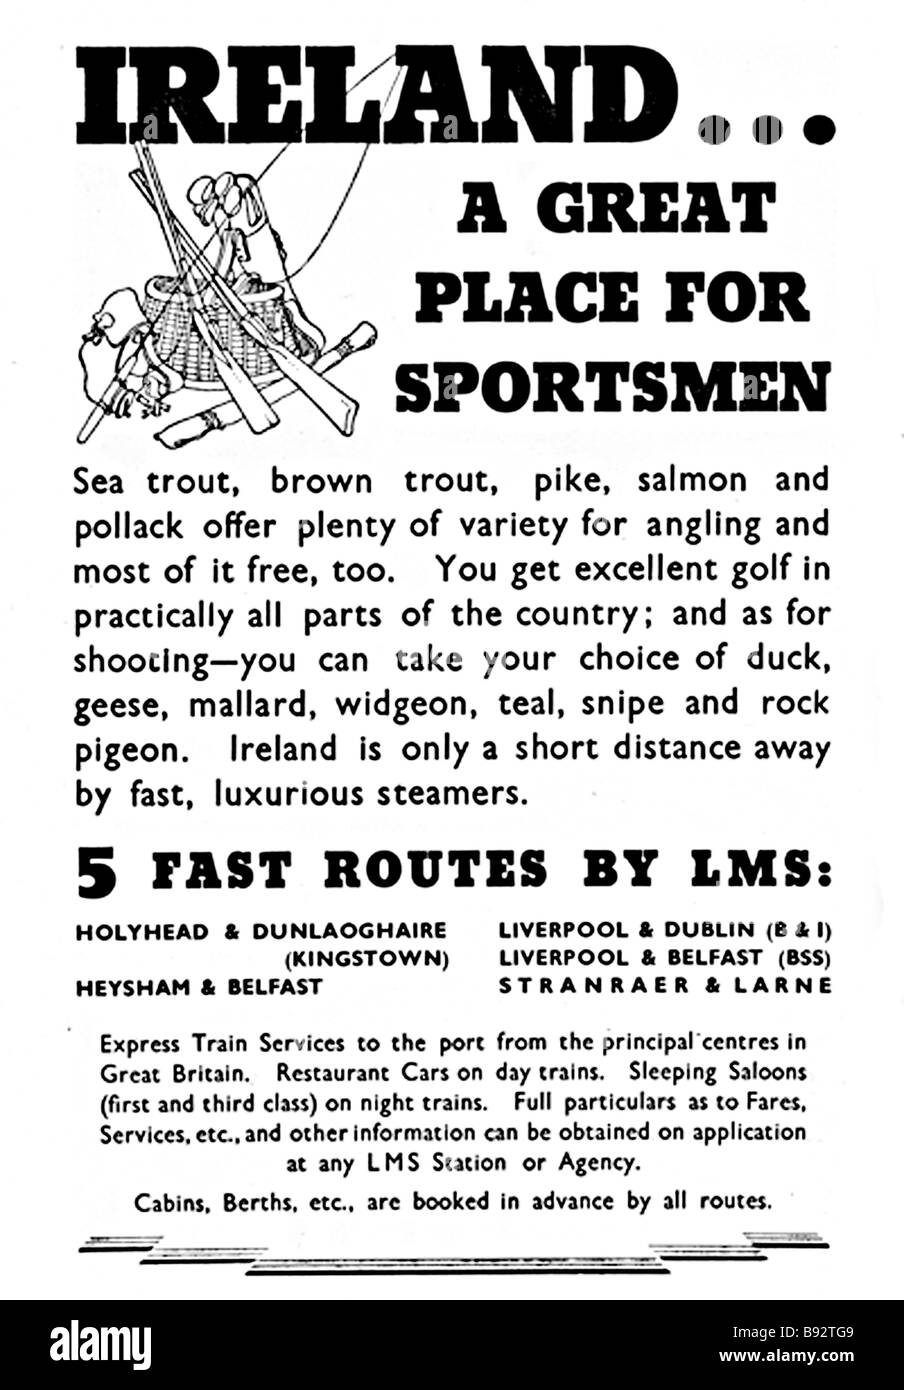 L'Irlande pour les sportifs 1936 LMS annonce vantant les vertus de l'Irlande comme un paradis pour la pêche et le tir Banque D'Images